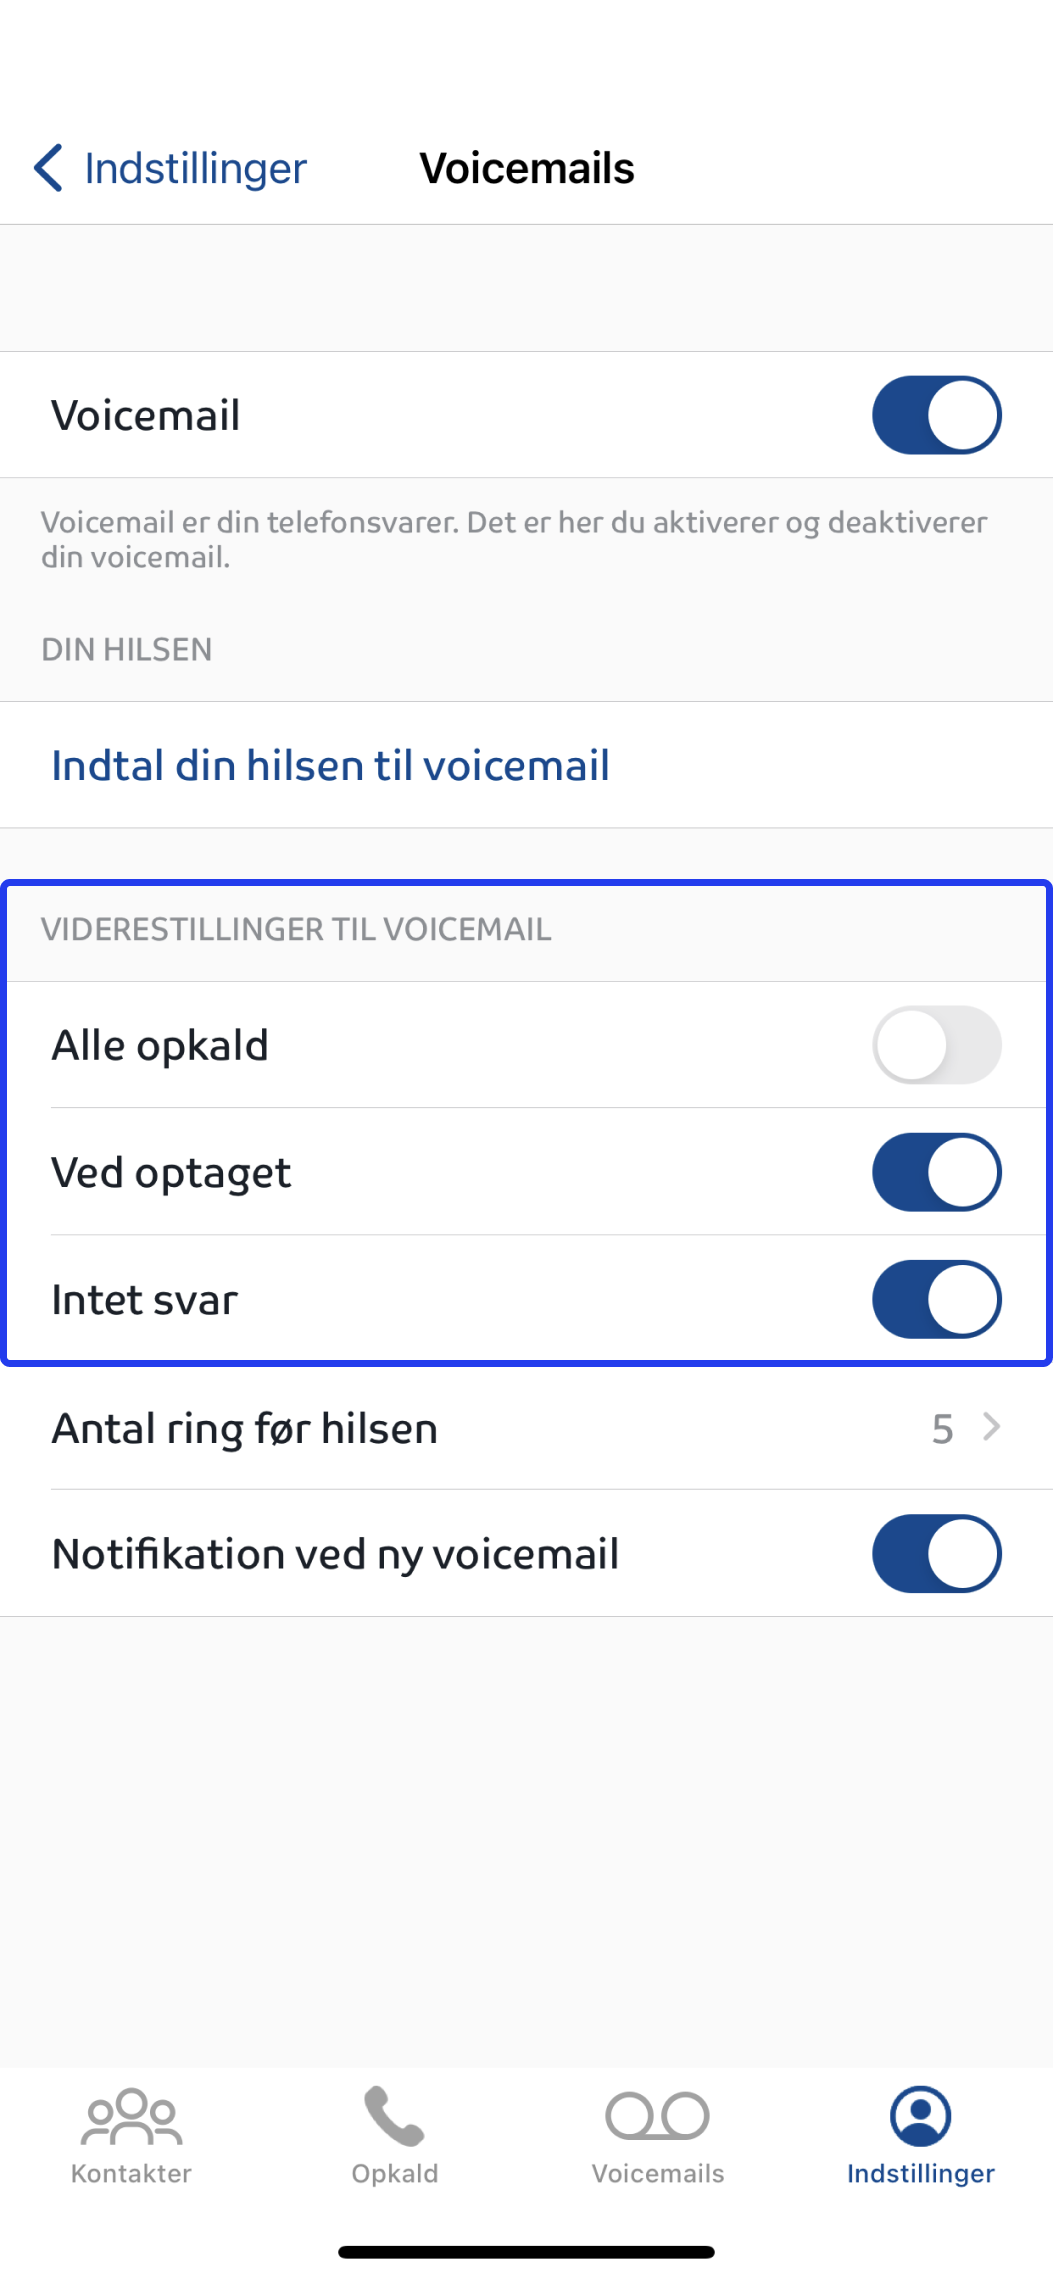 Billedet viser hvordan du slår voicemail til i forskellige scenarier